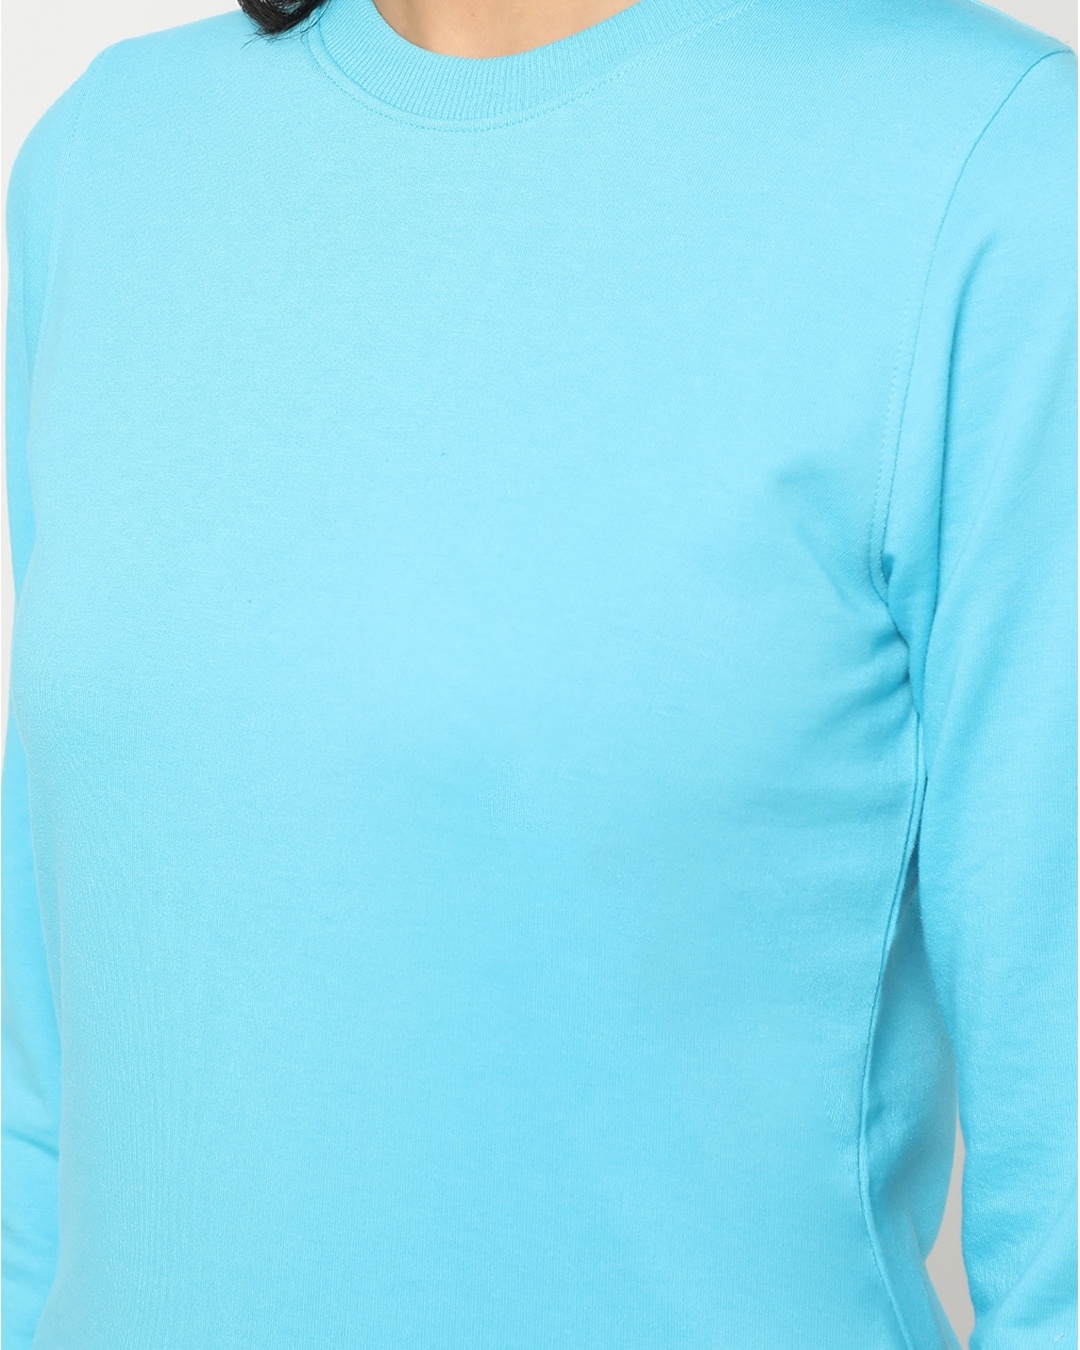 Shop Upbeat Blue Fleece Sweatshirt